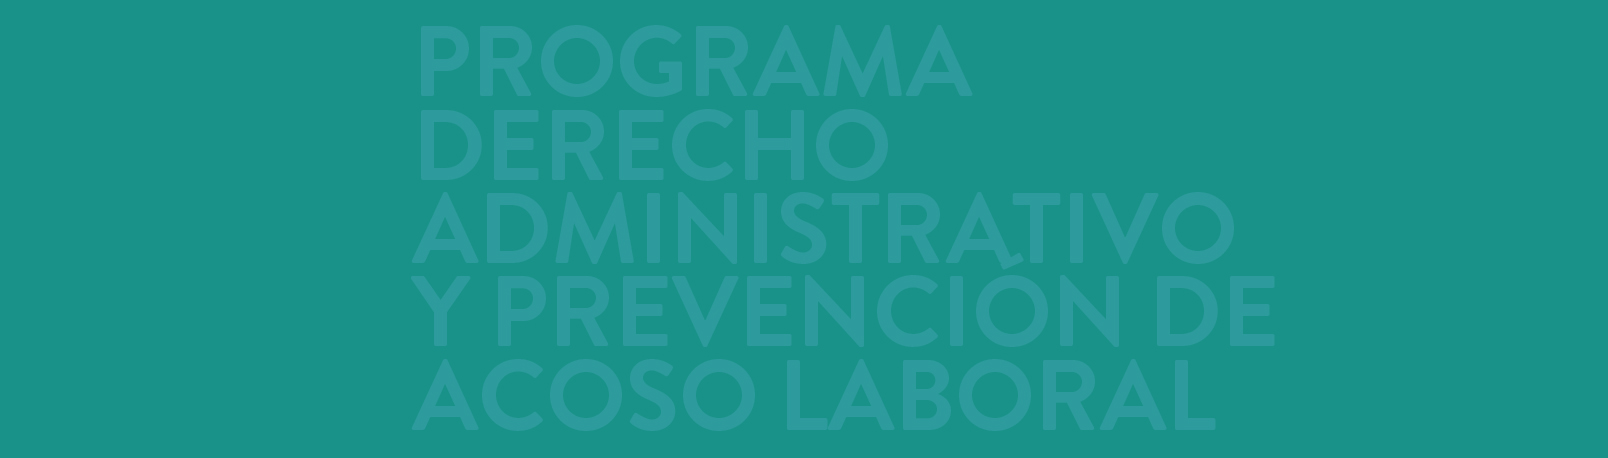 Programa Derecho Administrativo y Prevención de Acoso Laboral